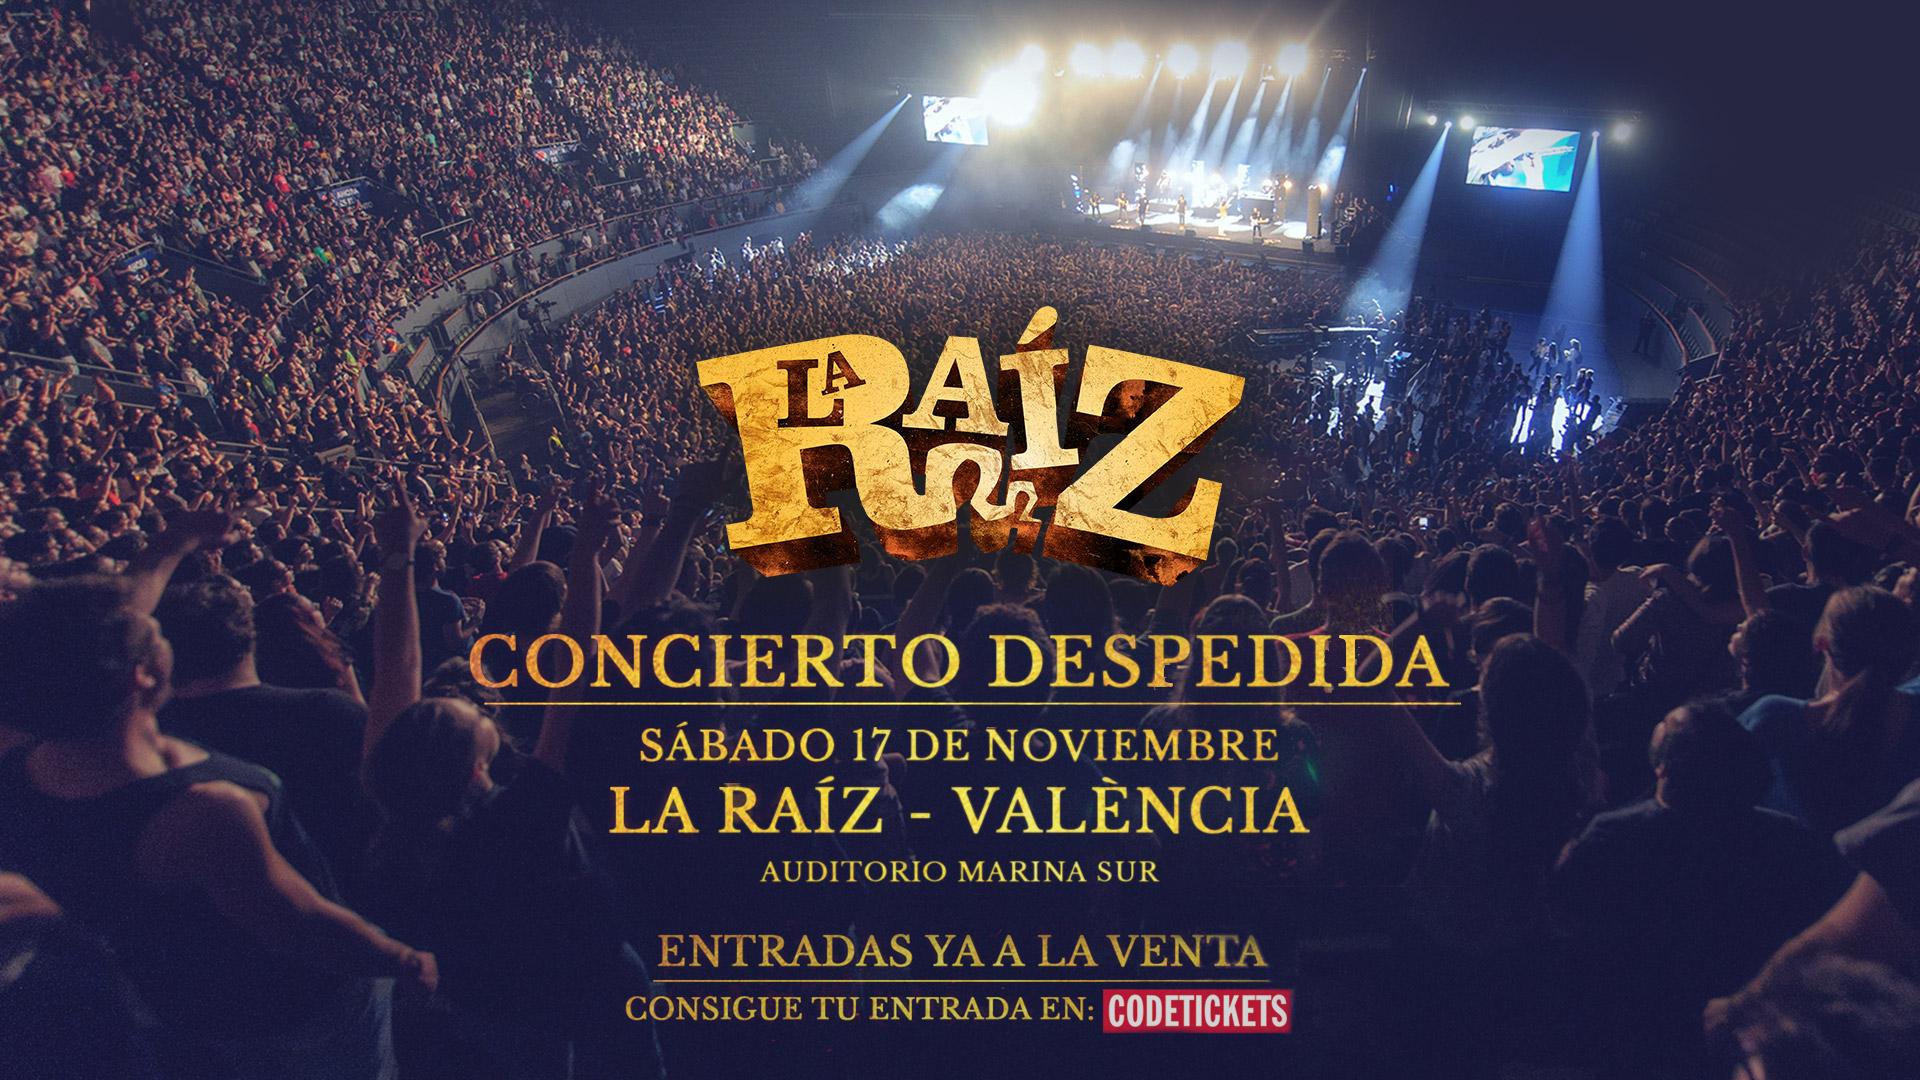 Esgotades totes les localitats pel comiat de tres dates de La Raíz a Madrid: darrera oportunitat per BCN i València!